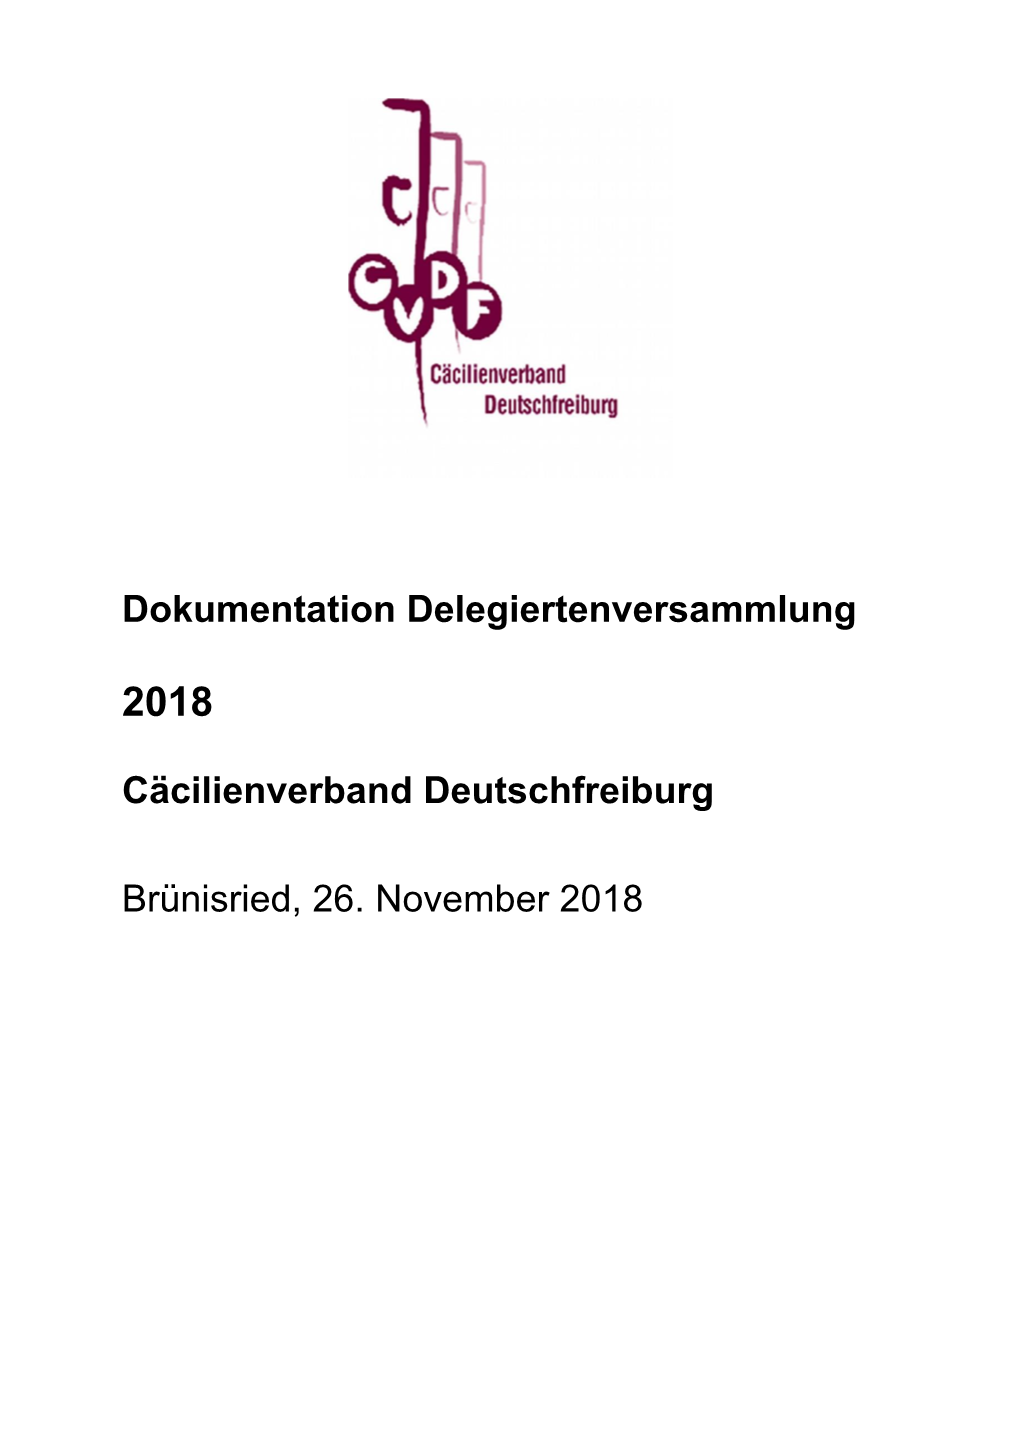 Cäcilienverband Deutschfreiburg Brünisried, 26. November 2018